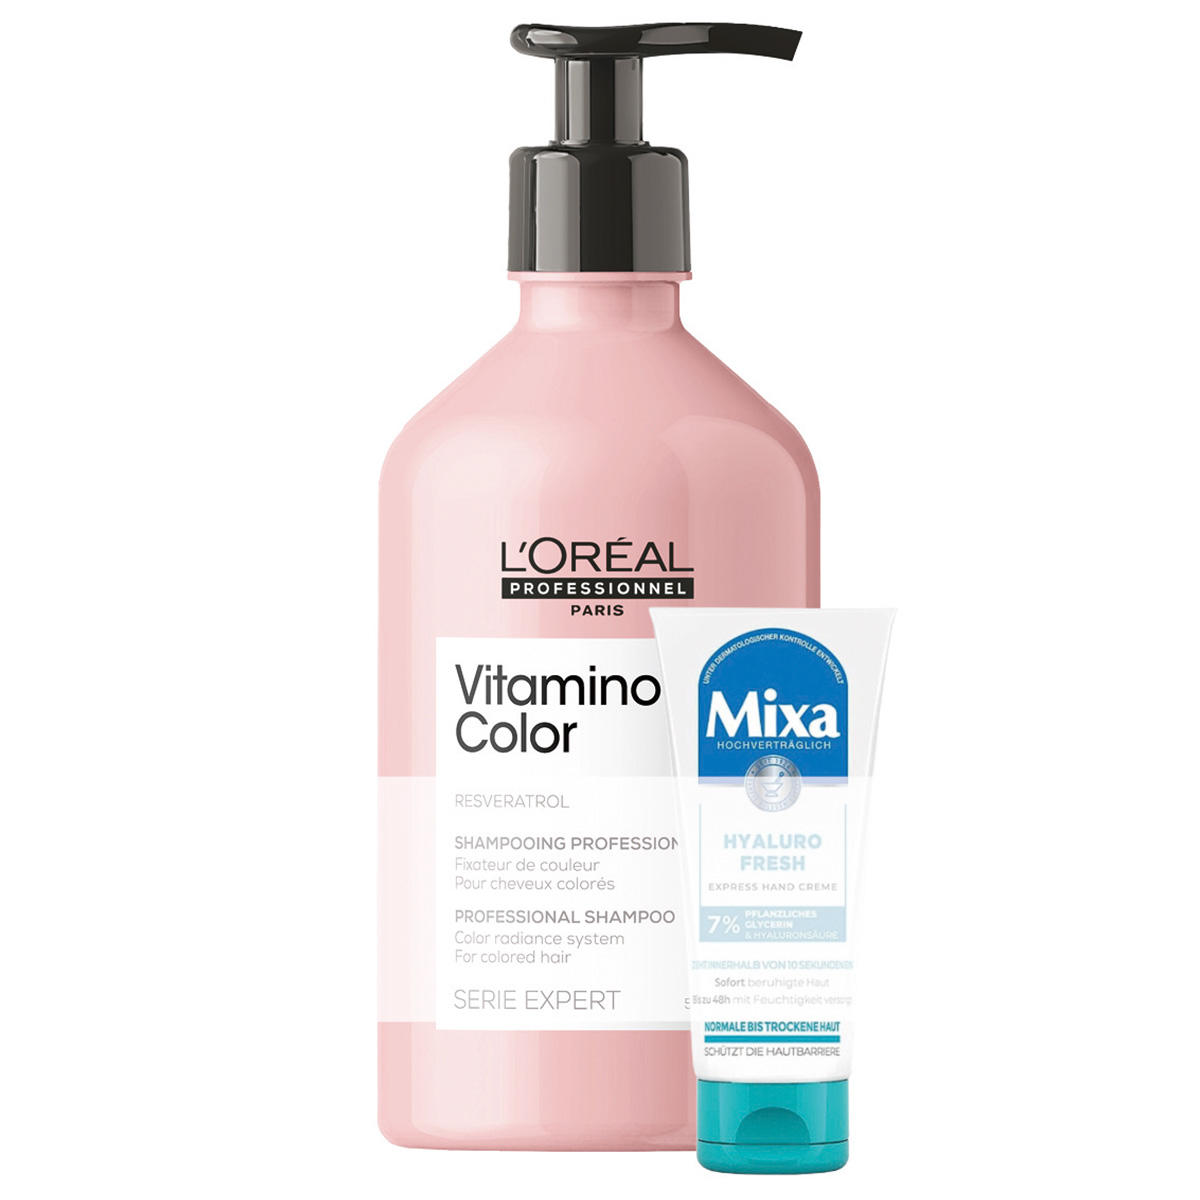 L'Oréal Professionnel Paris Vitamino Colour Shampoo 500 ml + geschenk  - 1